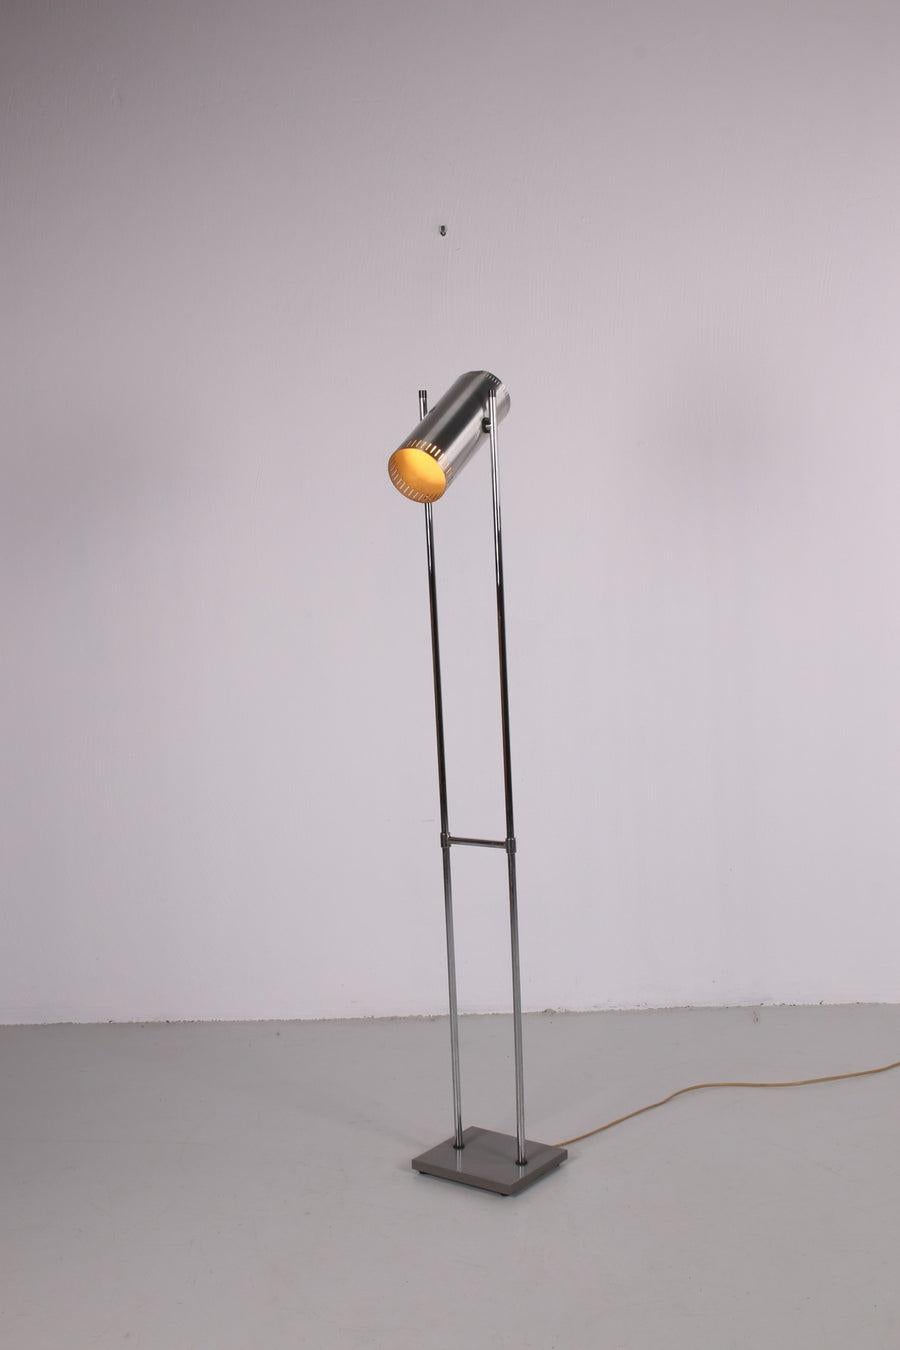 Trombone II, Stehleuchte aus Aluminium von Jo Hammerborg für Fog & Mørup, 1966 - a 
schöne dänische Stehlampe aus der Mitte des Jahrhunderts in sehr gutem Vintage-Zustand.

Eine schlanke Stehleuchte mit einem quadratischen, grau lackierten